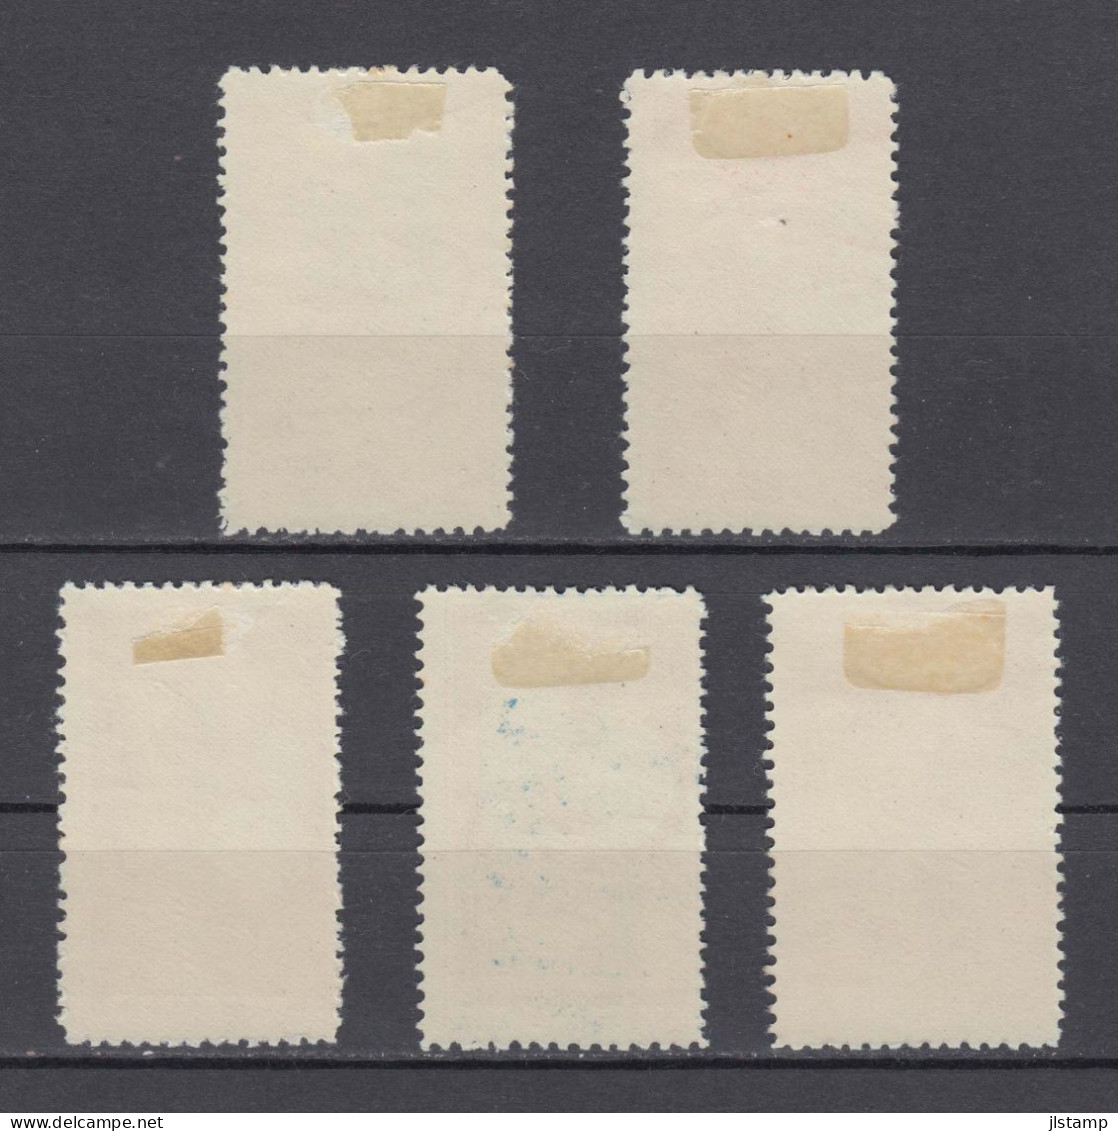 Turkey 1950 Izmir International Fair Stamp Set,Scott# 1008/1012,OG MH,VF - Neufs